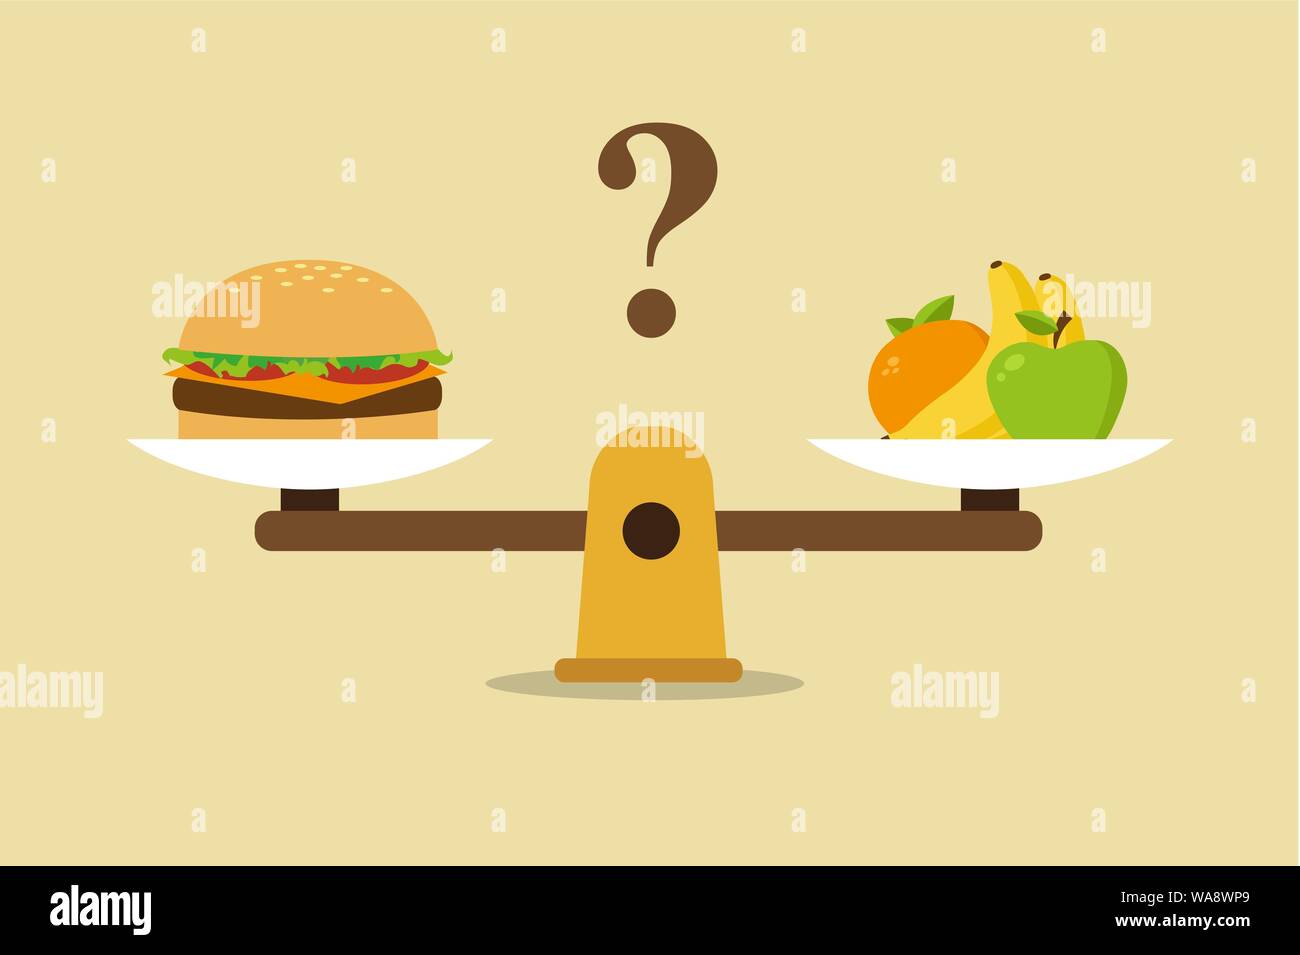 Obst und Hamburger auf Skalen. Ernährung und gesundes Essen. Vector Illustration Stock Vektor